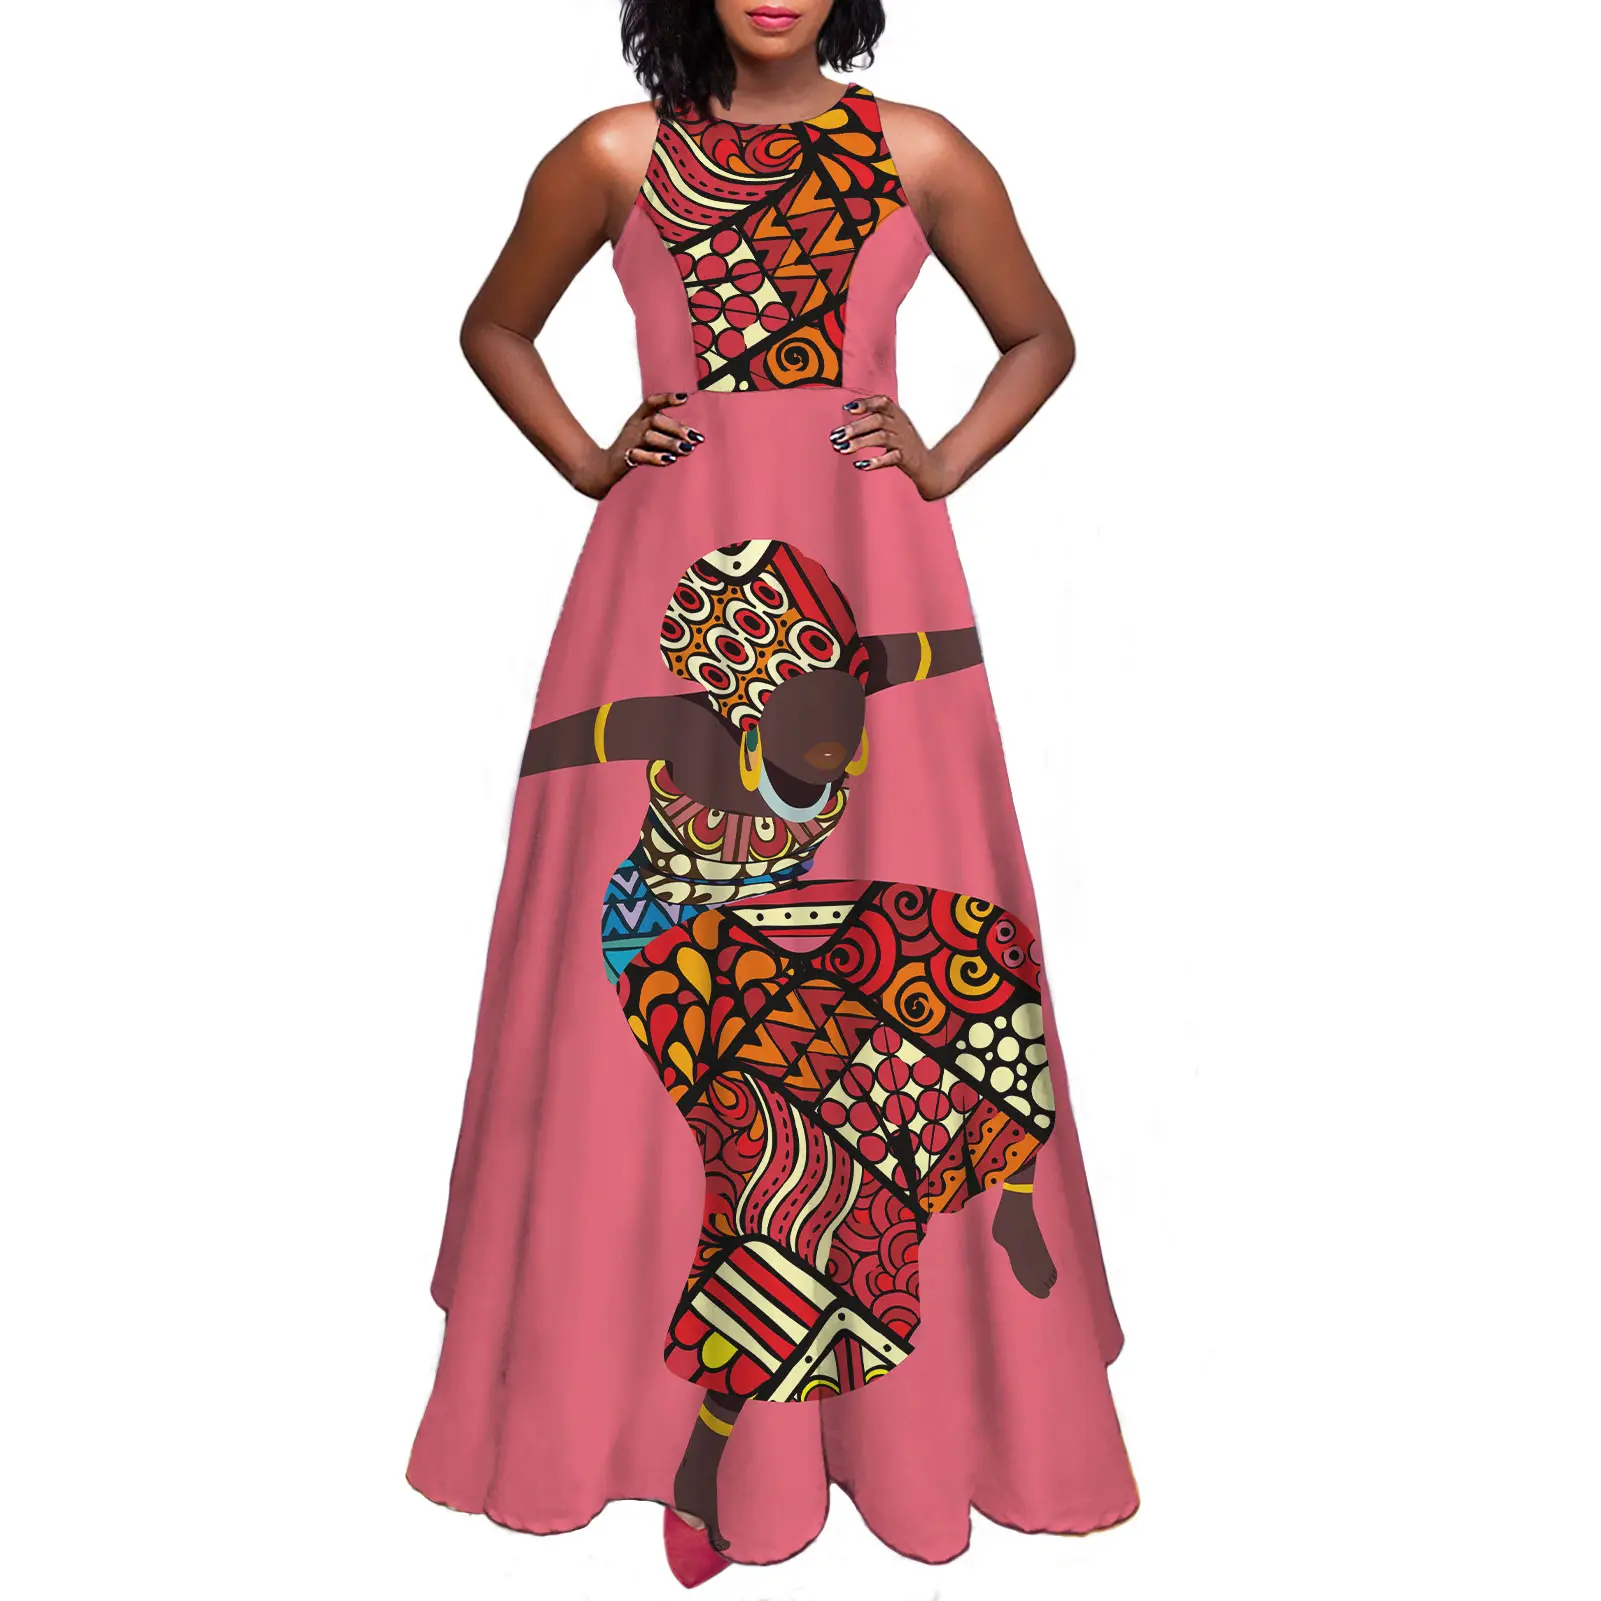 2021 nuovo Design donne africane Tribal Party Wear economici Casual Women Dress Casual Dress abiti da sera lunghi eleganti senza maniche